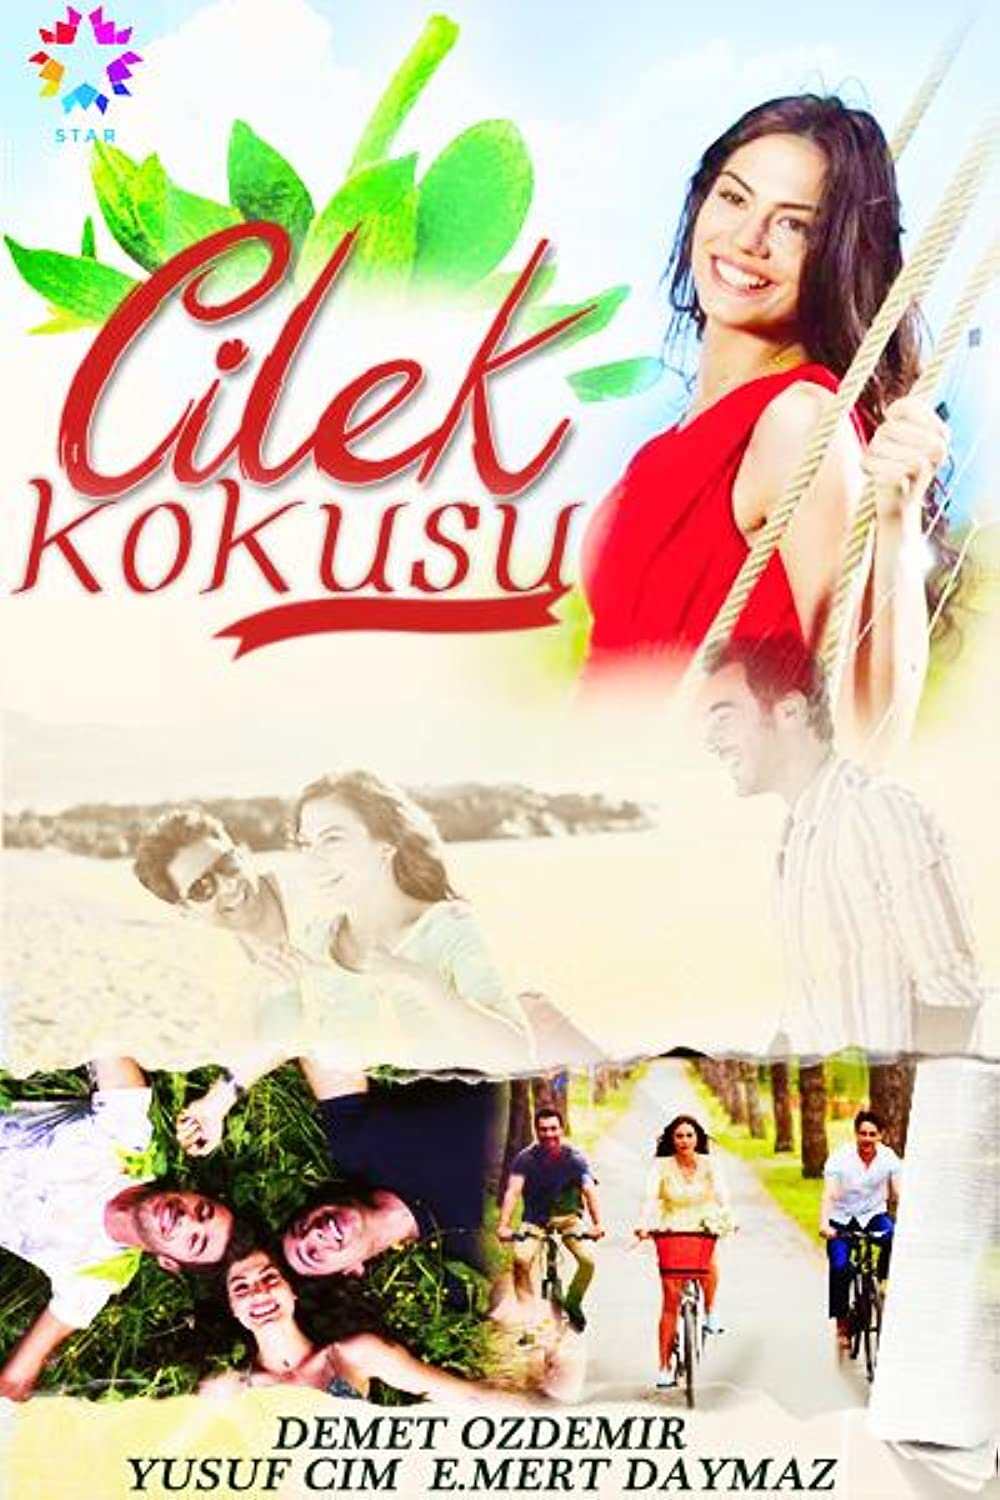 جدیدترین سریال های رمانتیک کمدی ترکی